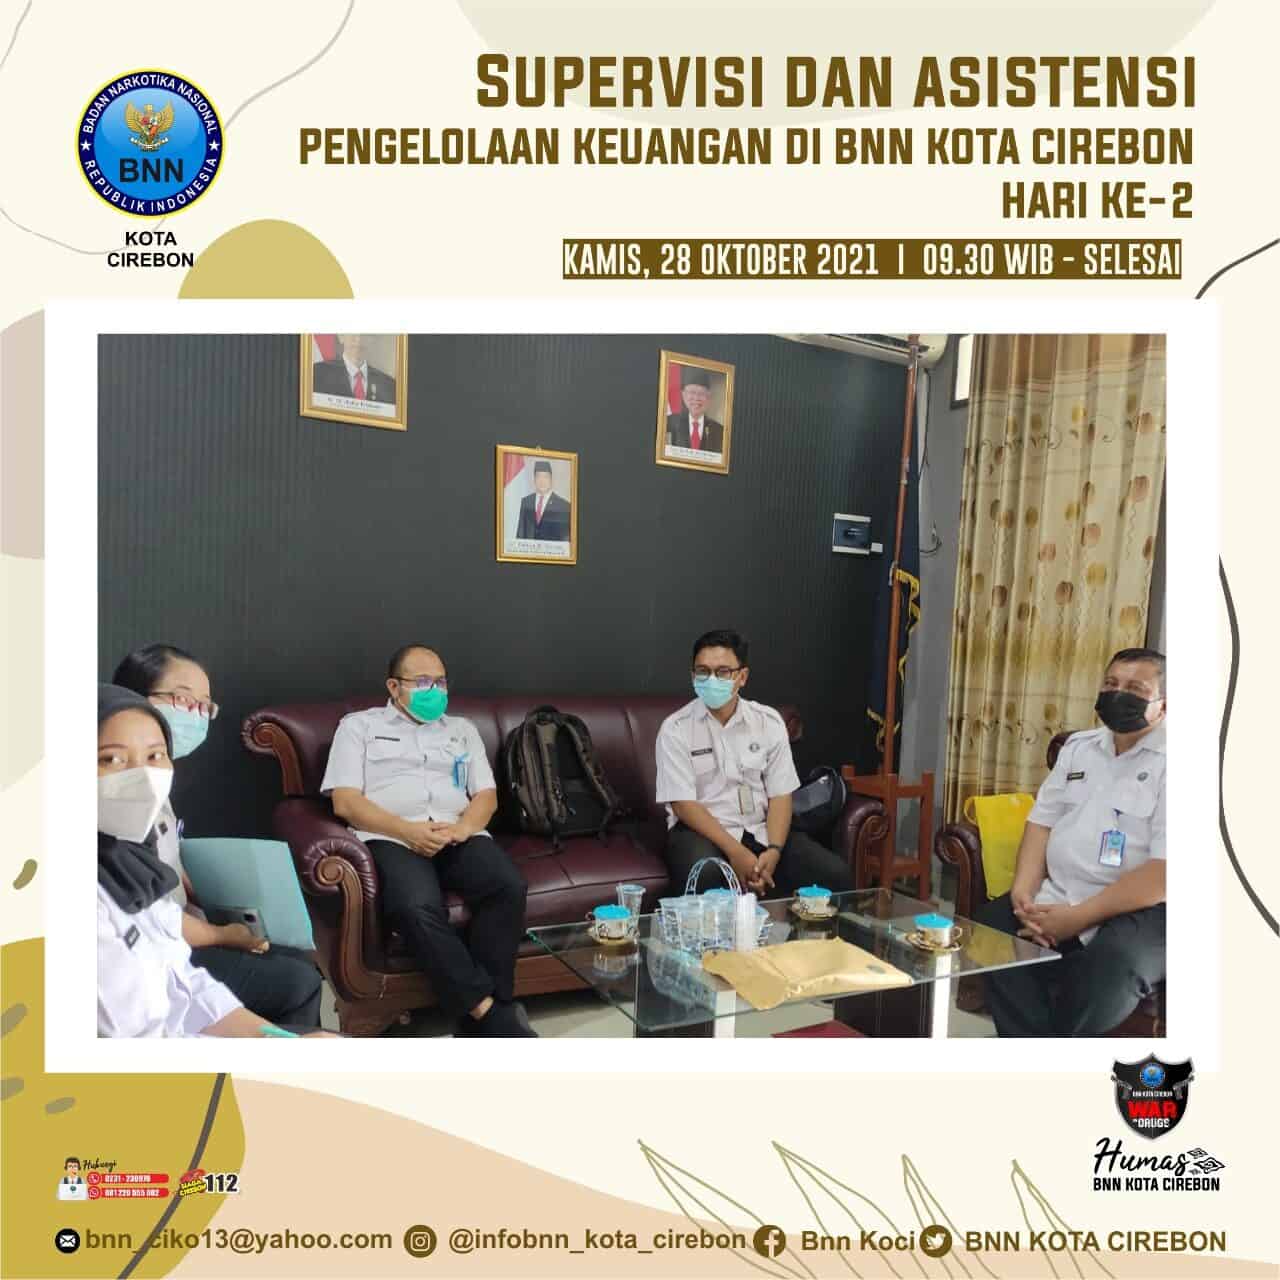 Supervisi dan asistensi pengelolaan keuangan di BNN Kota Cirebon